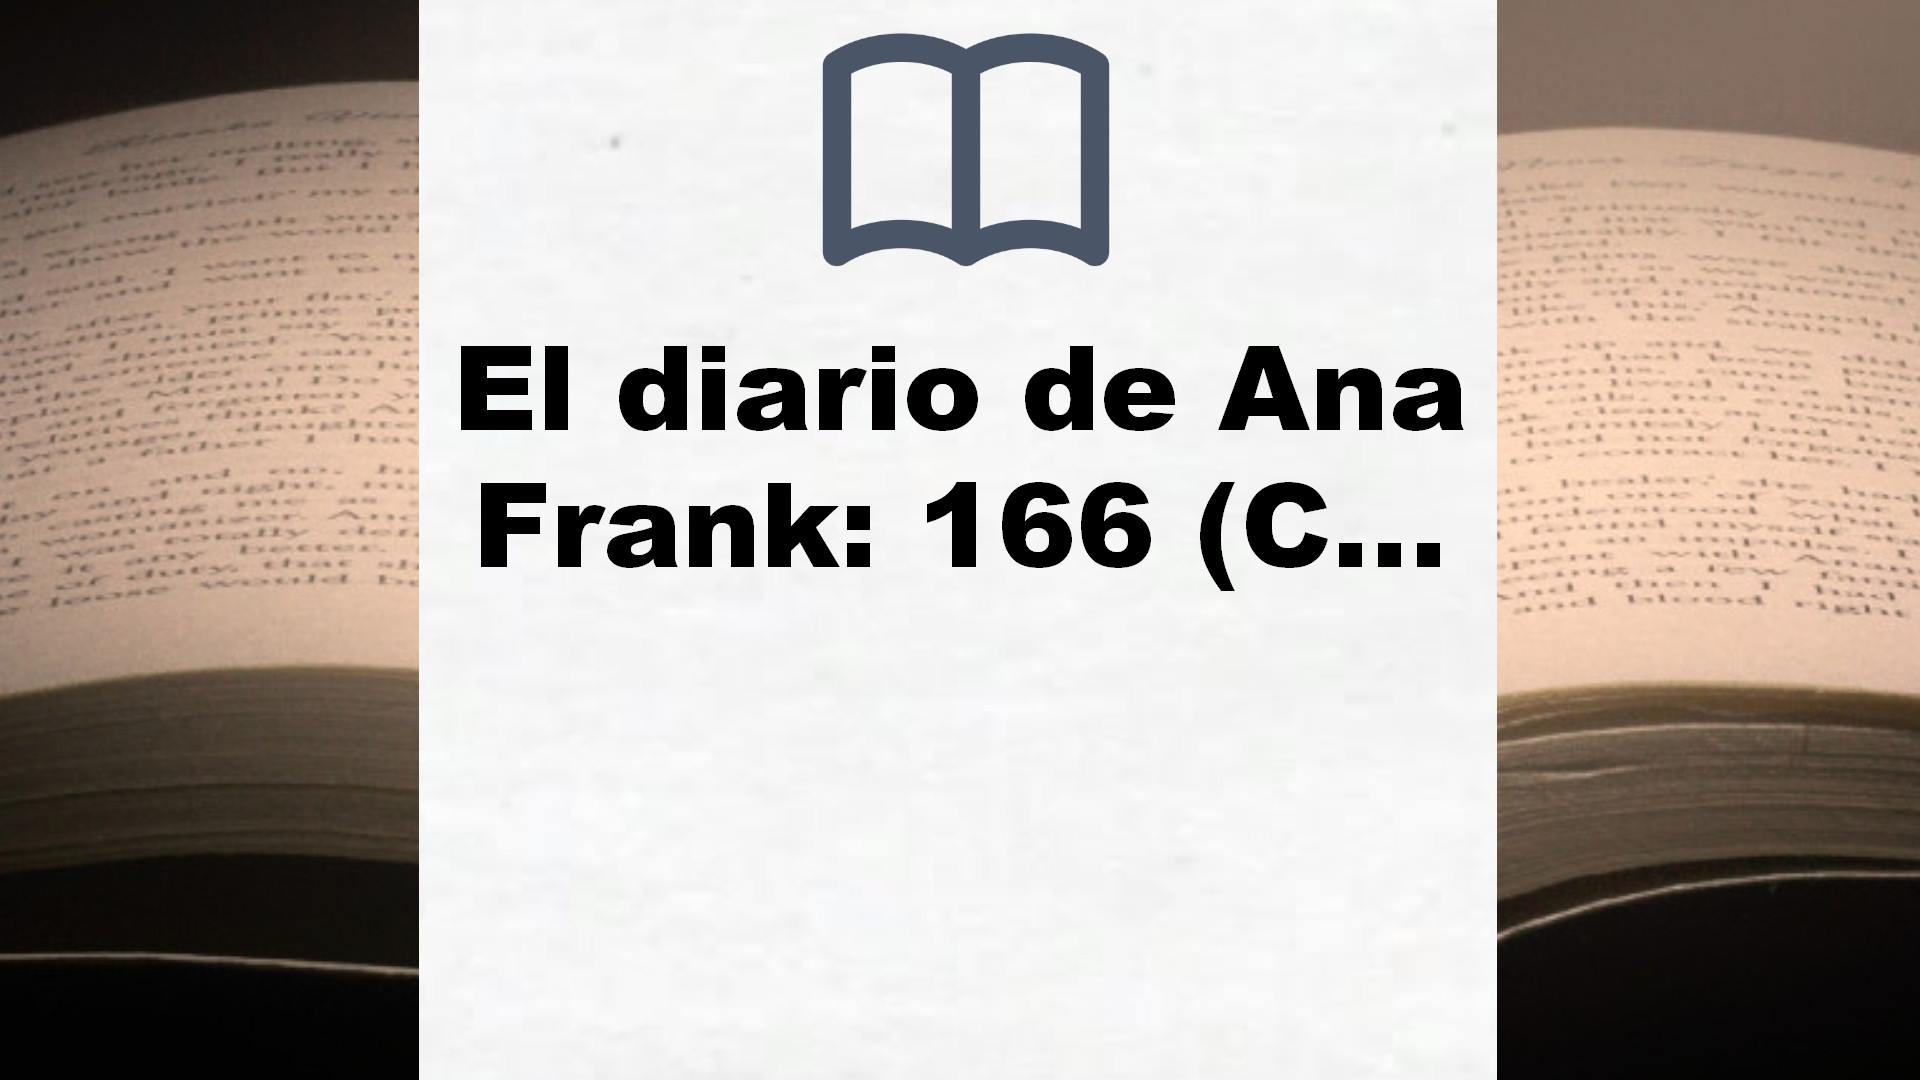 El diario de Ana Frank: 166 (Contemporánea) – Reseña del libro